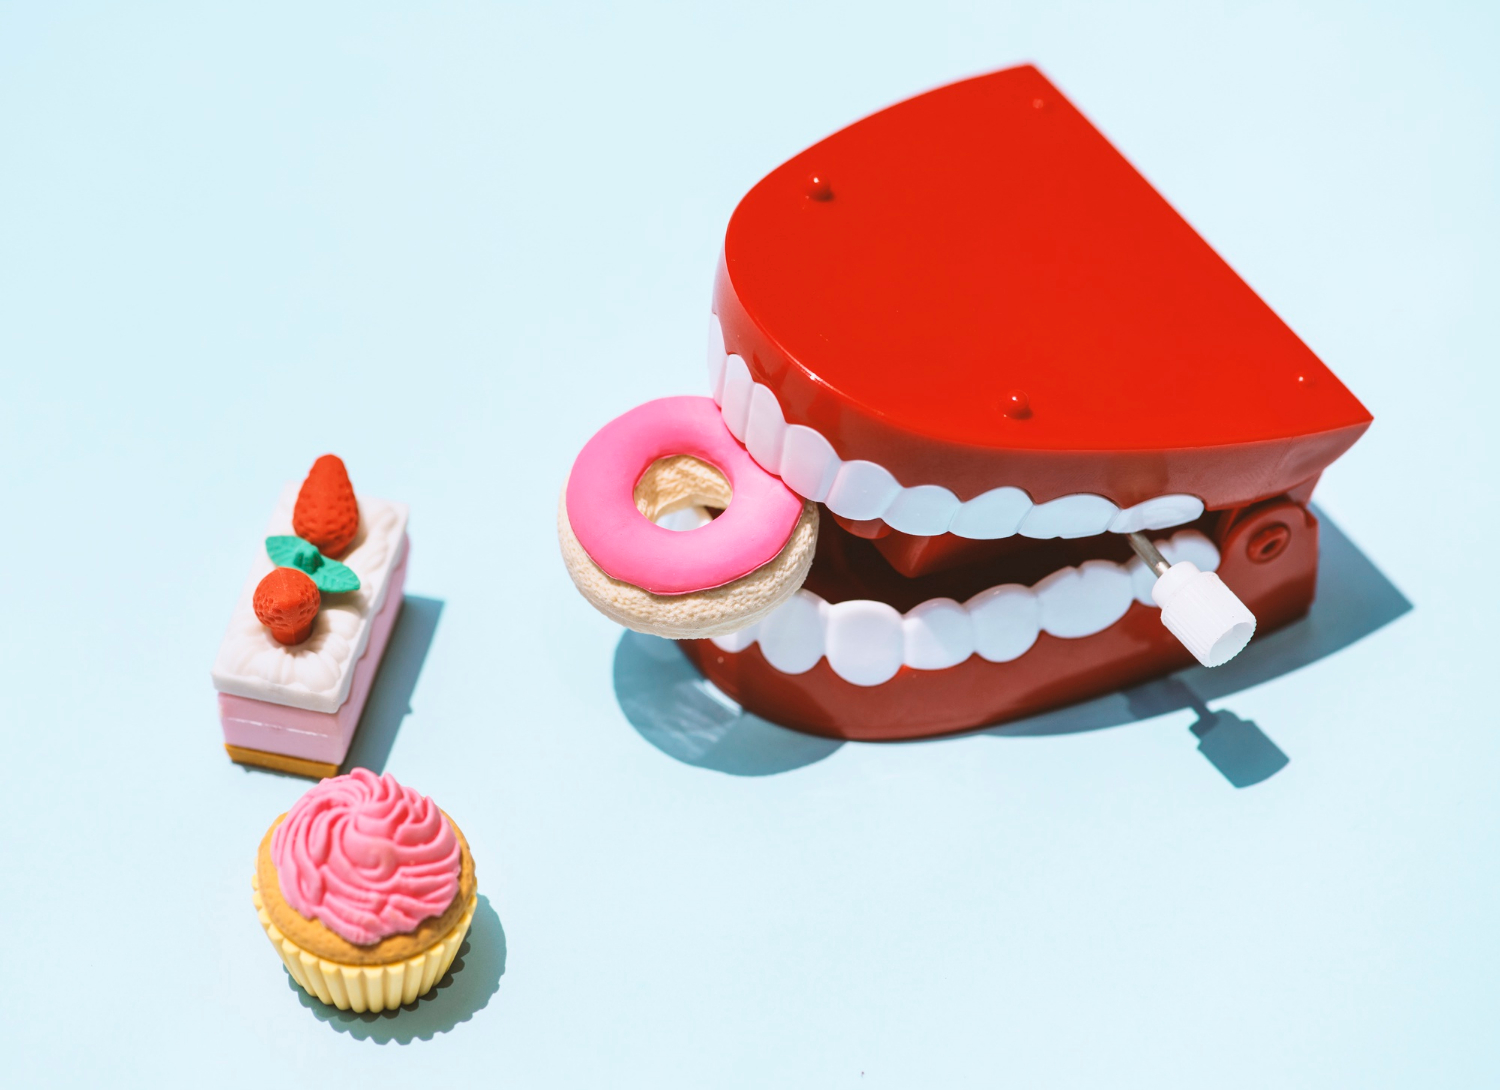 Повышенная чувствительность зубов к сладкому